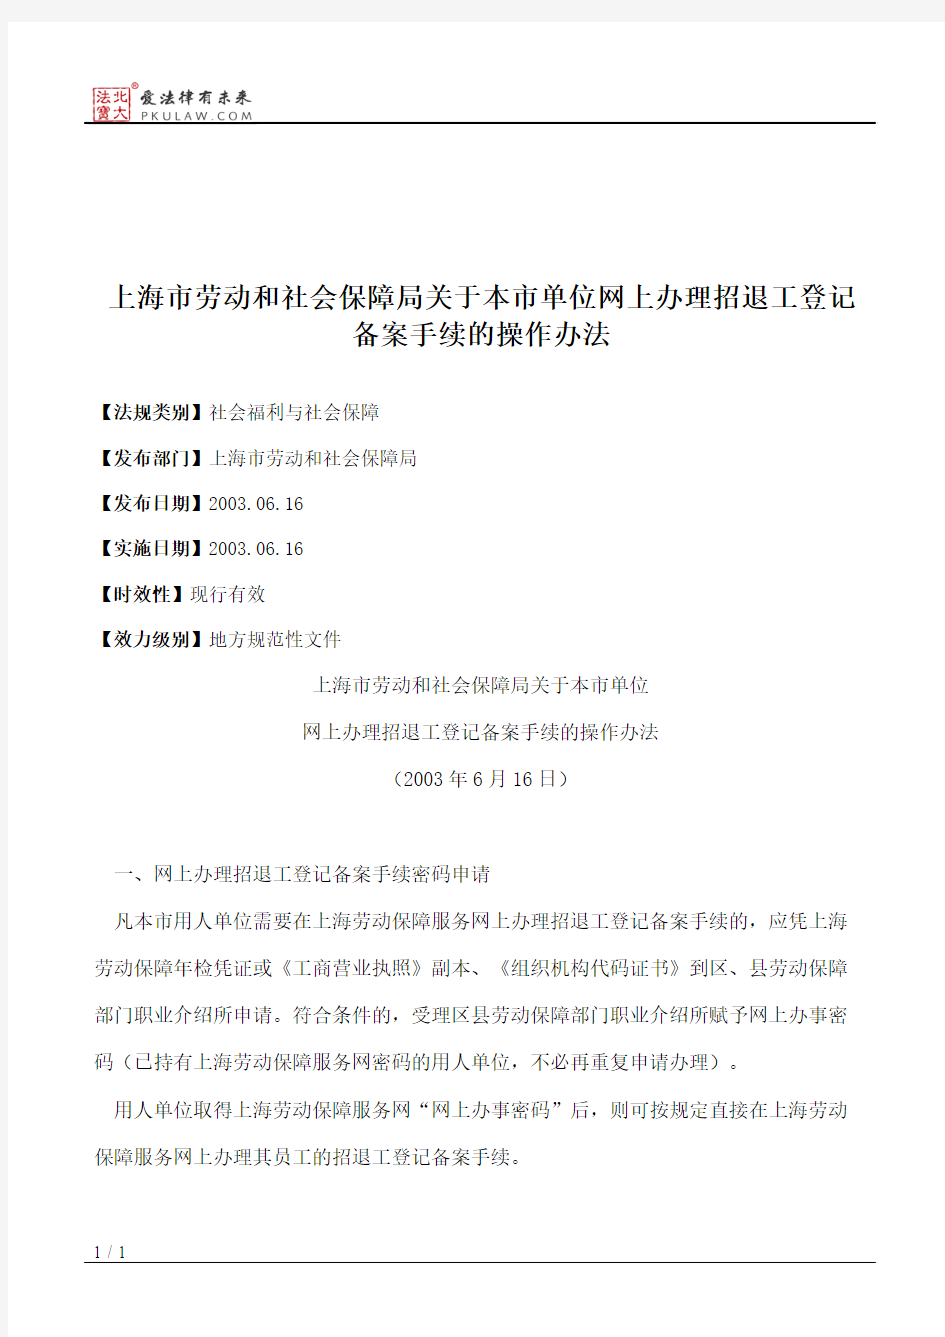 上海市劳动和社会保障局关于本市单位网上办理招退工登记备案手续